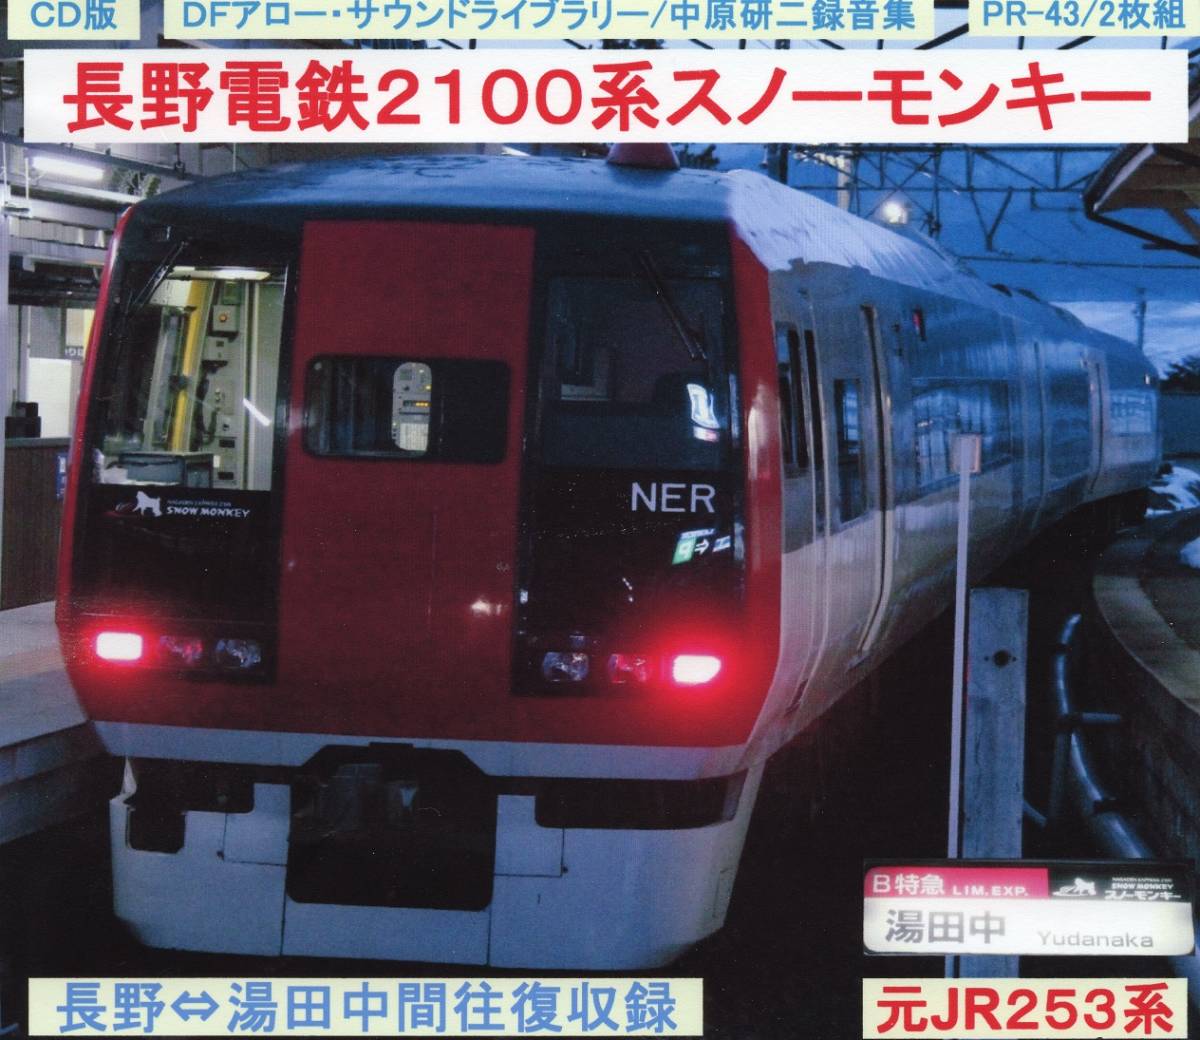 ＤＦアロー・ＣＤ版・PR－43・長野電鉄２１００系スノーモンキー_ジャケット表面です。